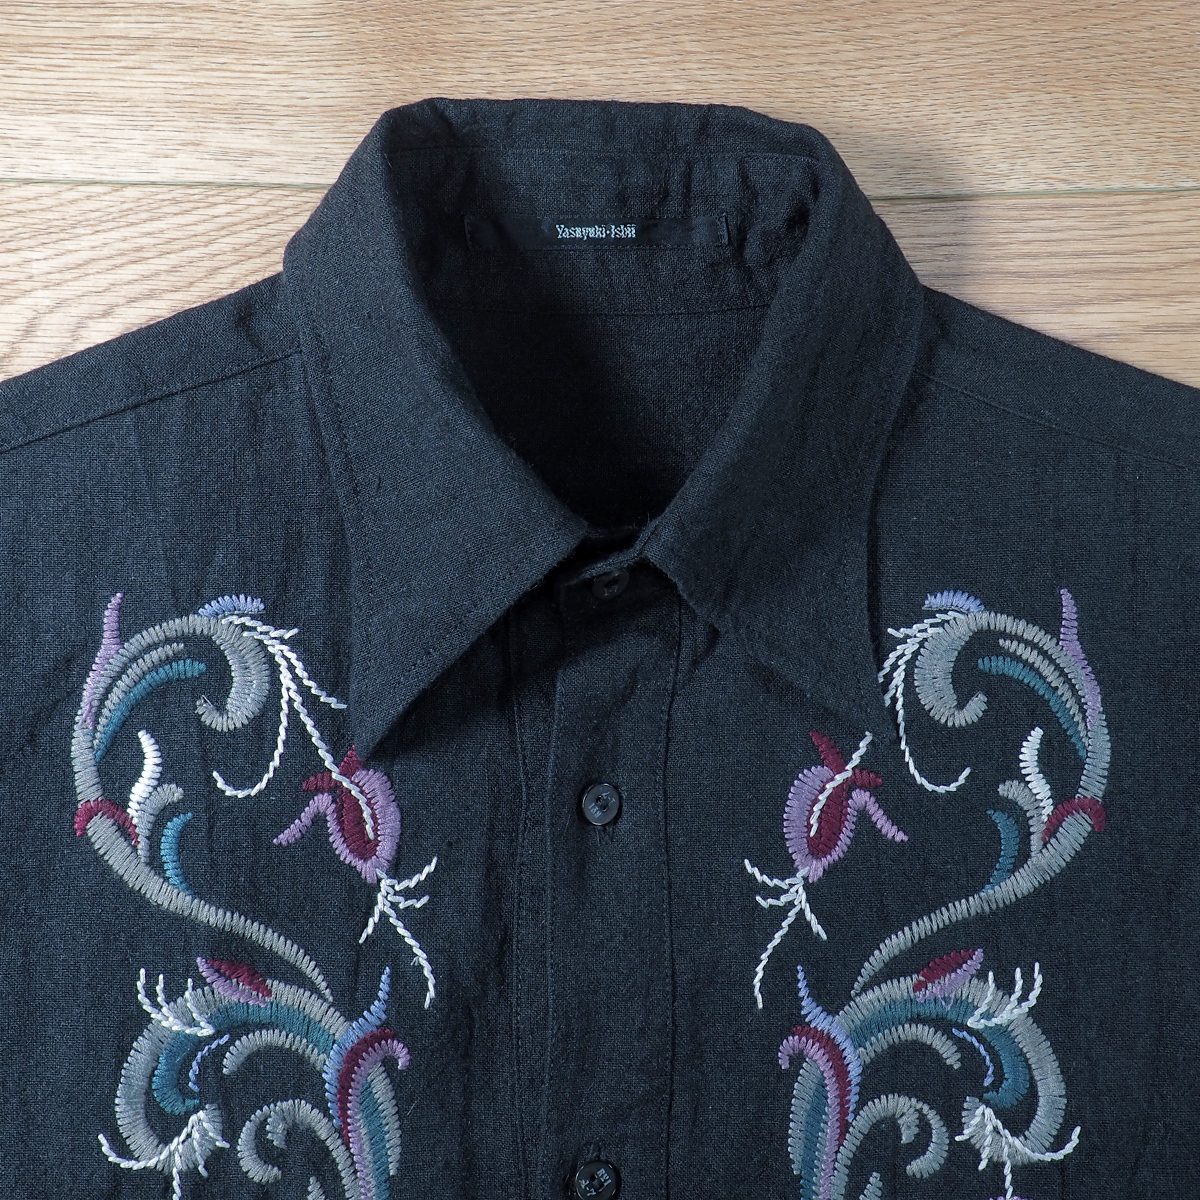 【送料無料】Yasuyuki Ishii(ヤスユキイシイ) フラワーリーフ刺繍 天然素材 ボタンダウンシャツ 黒 中古品 古着